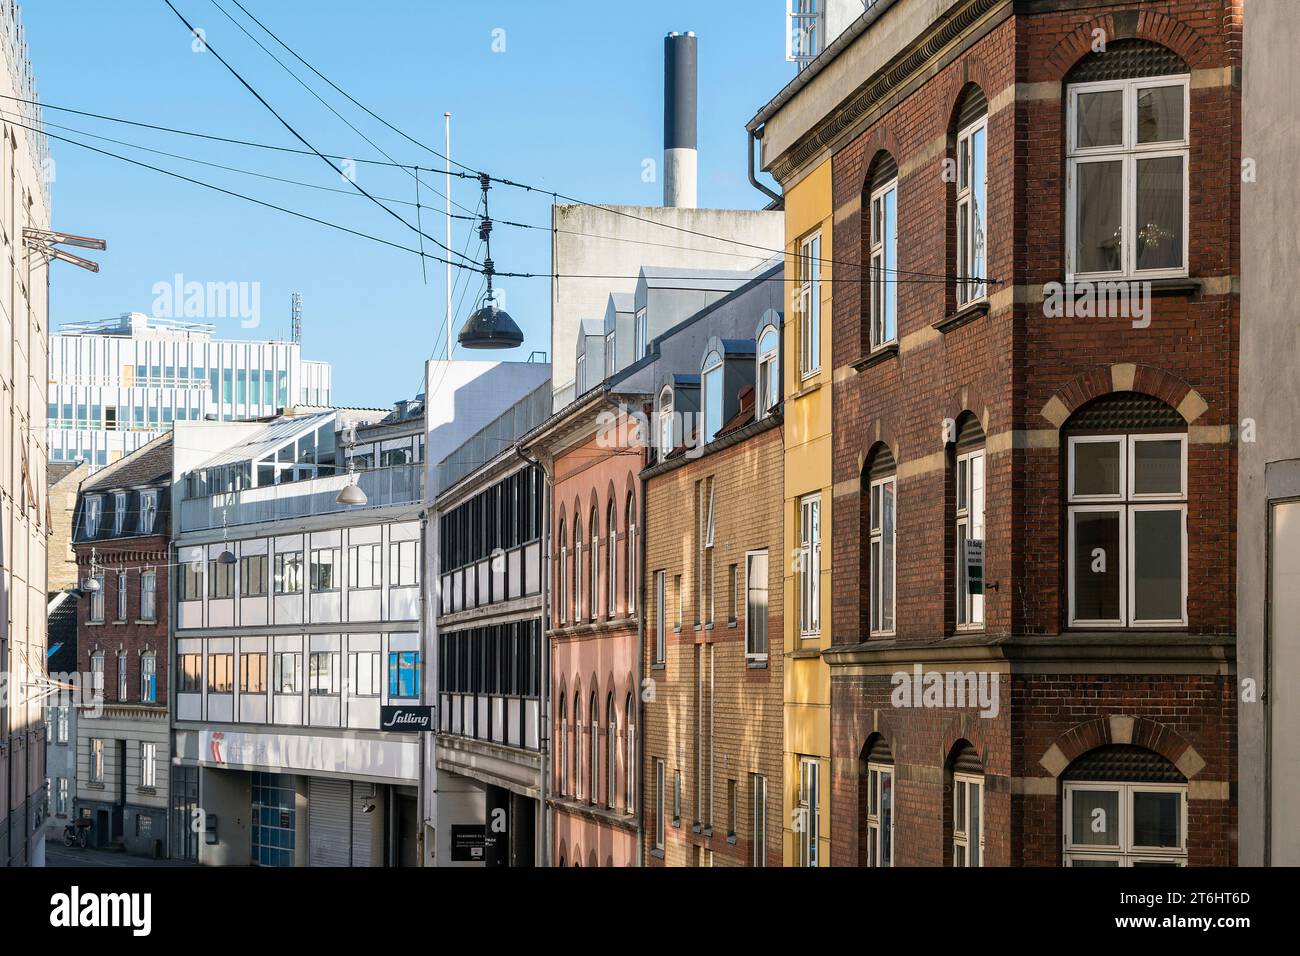 Danemark, Jutland, Aarhus, Skt. Clemens Torv, rue, façades typiques Banque D'Images